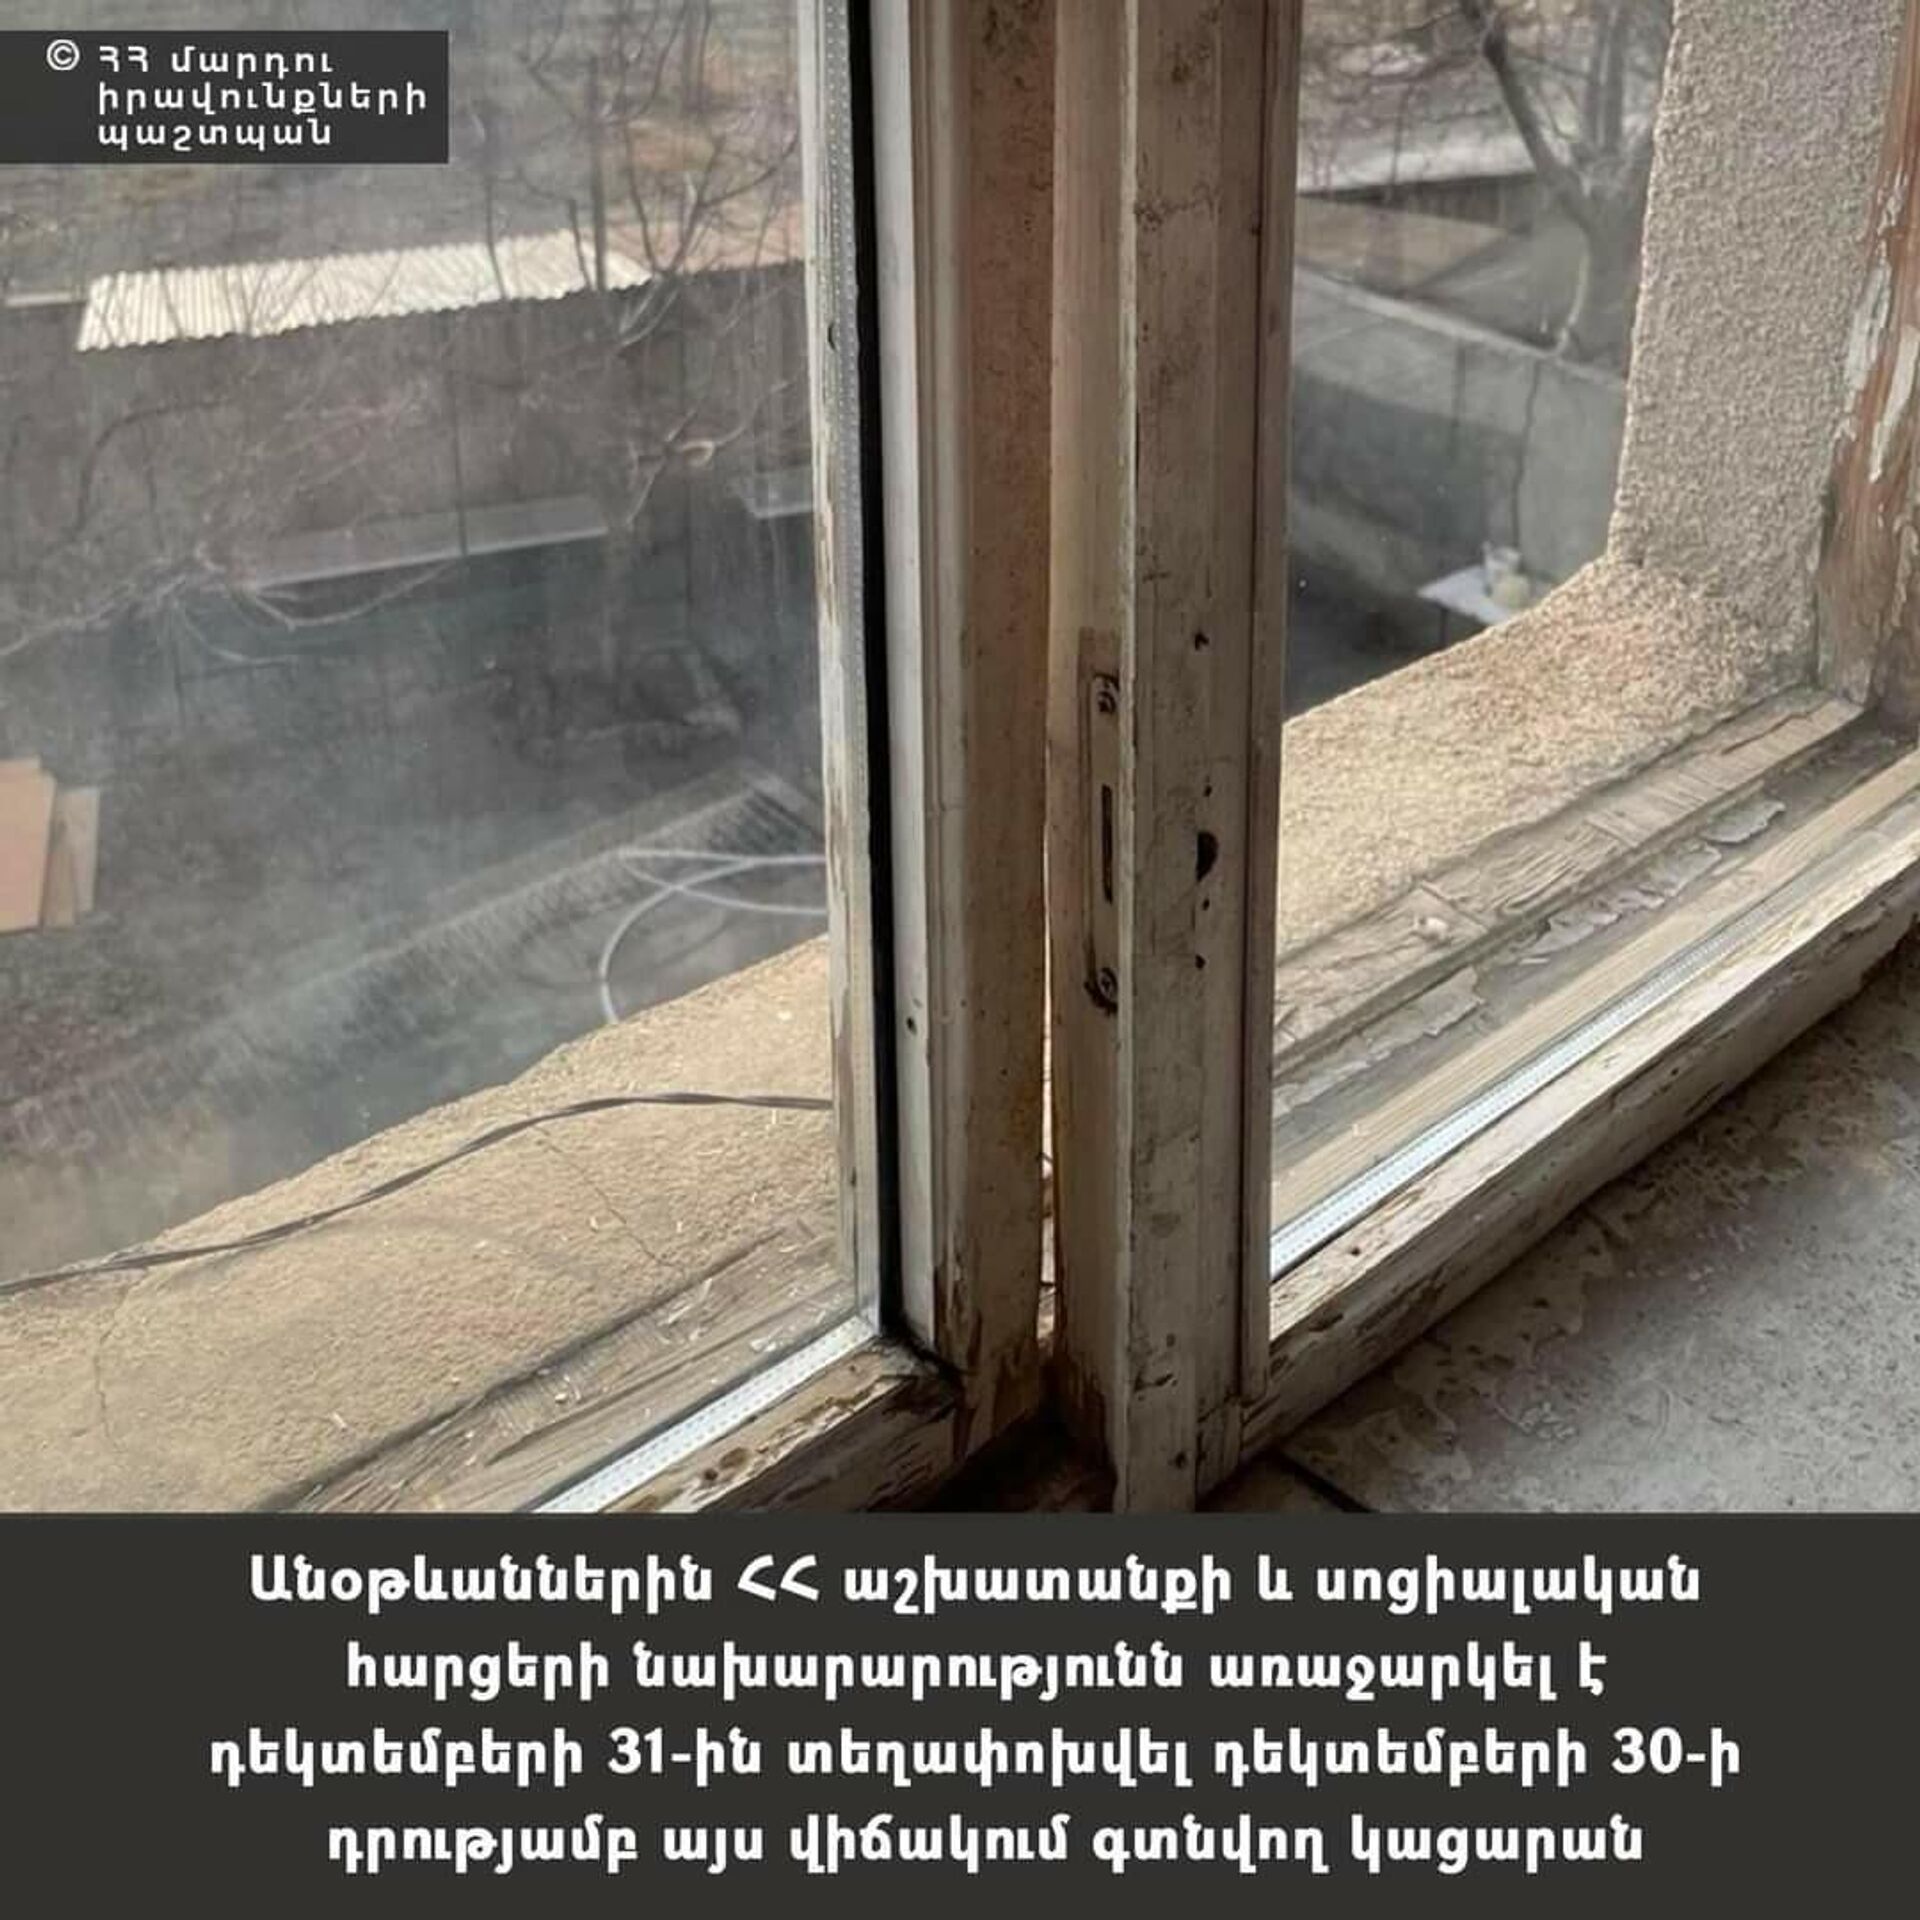 Омбудсмен Армении опубликовал фотографии состояния жилья, предоставленного Минсоцтруда для бездомных по состоянию на 30 декабря - Sputnik Армения, 1920, 04.01.2022